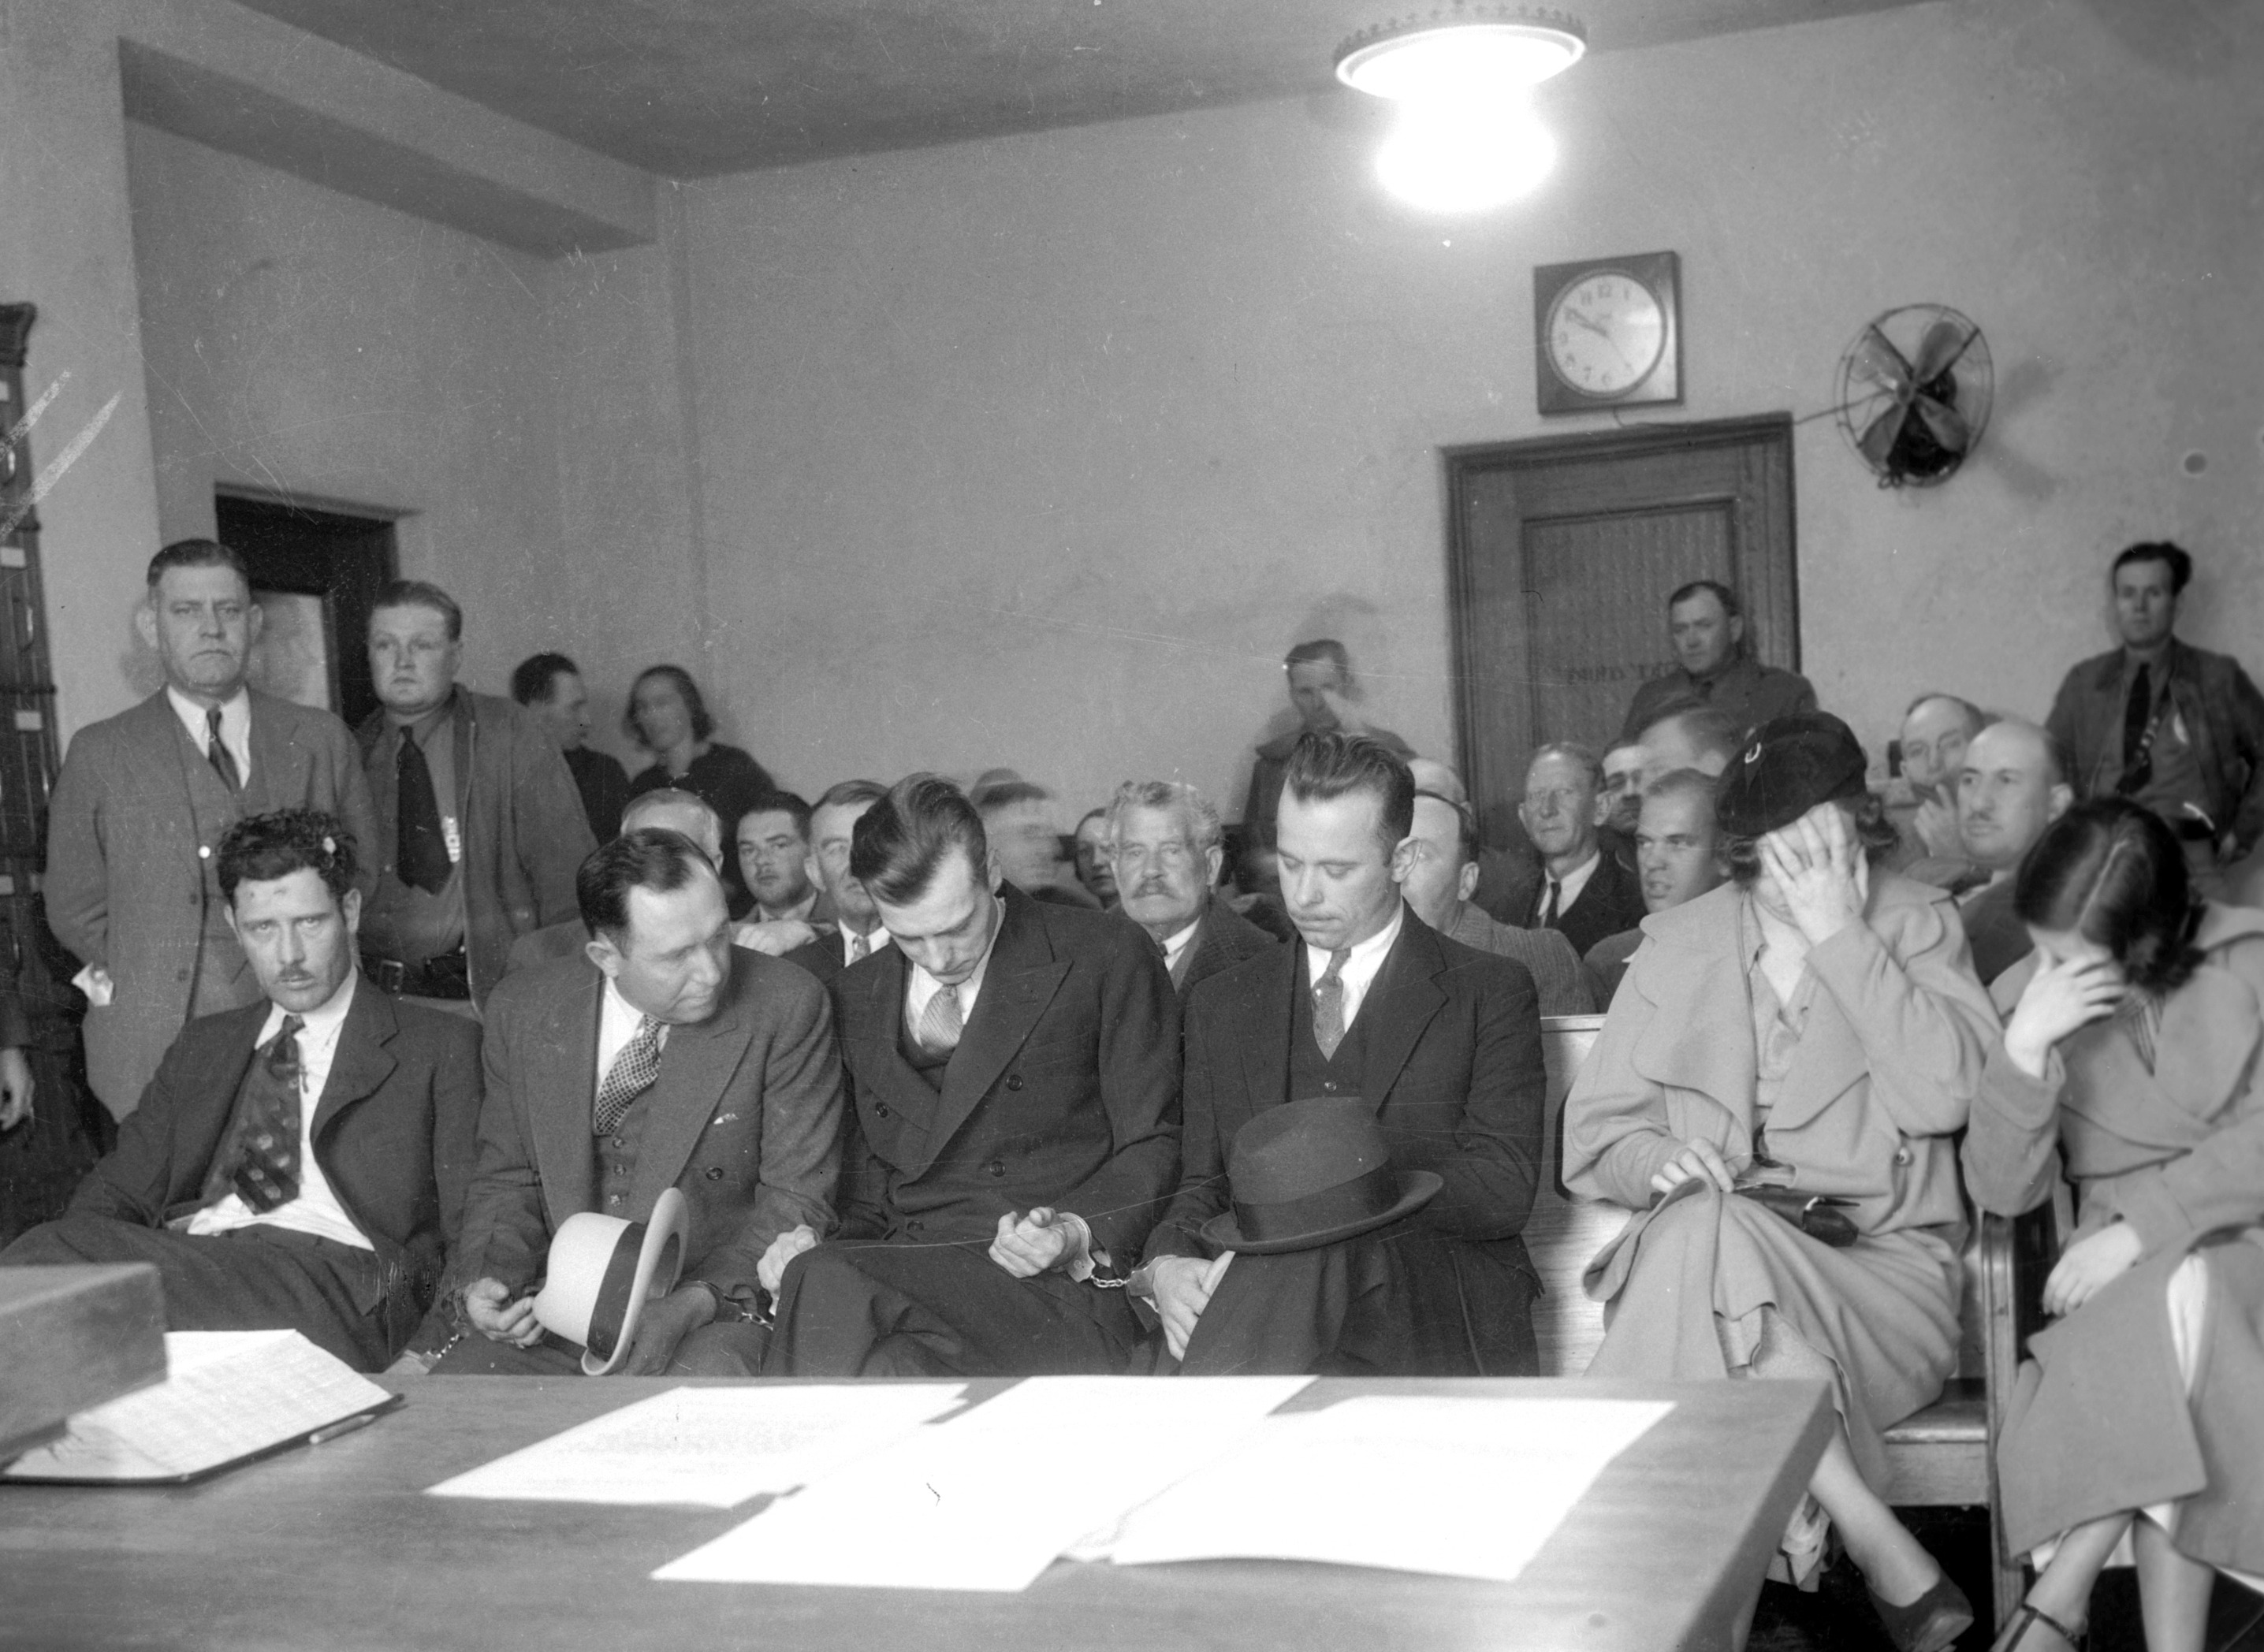 Här syns John Dillinger med sitt maffiagäng. Från vänster sittandes: Russel Clark, Charles Makley, Harry Pierpont, John Dilliger. Vid en rättegång från 1934.